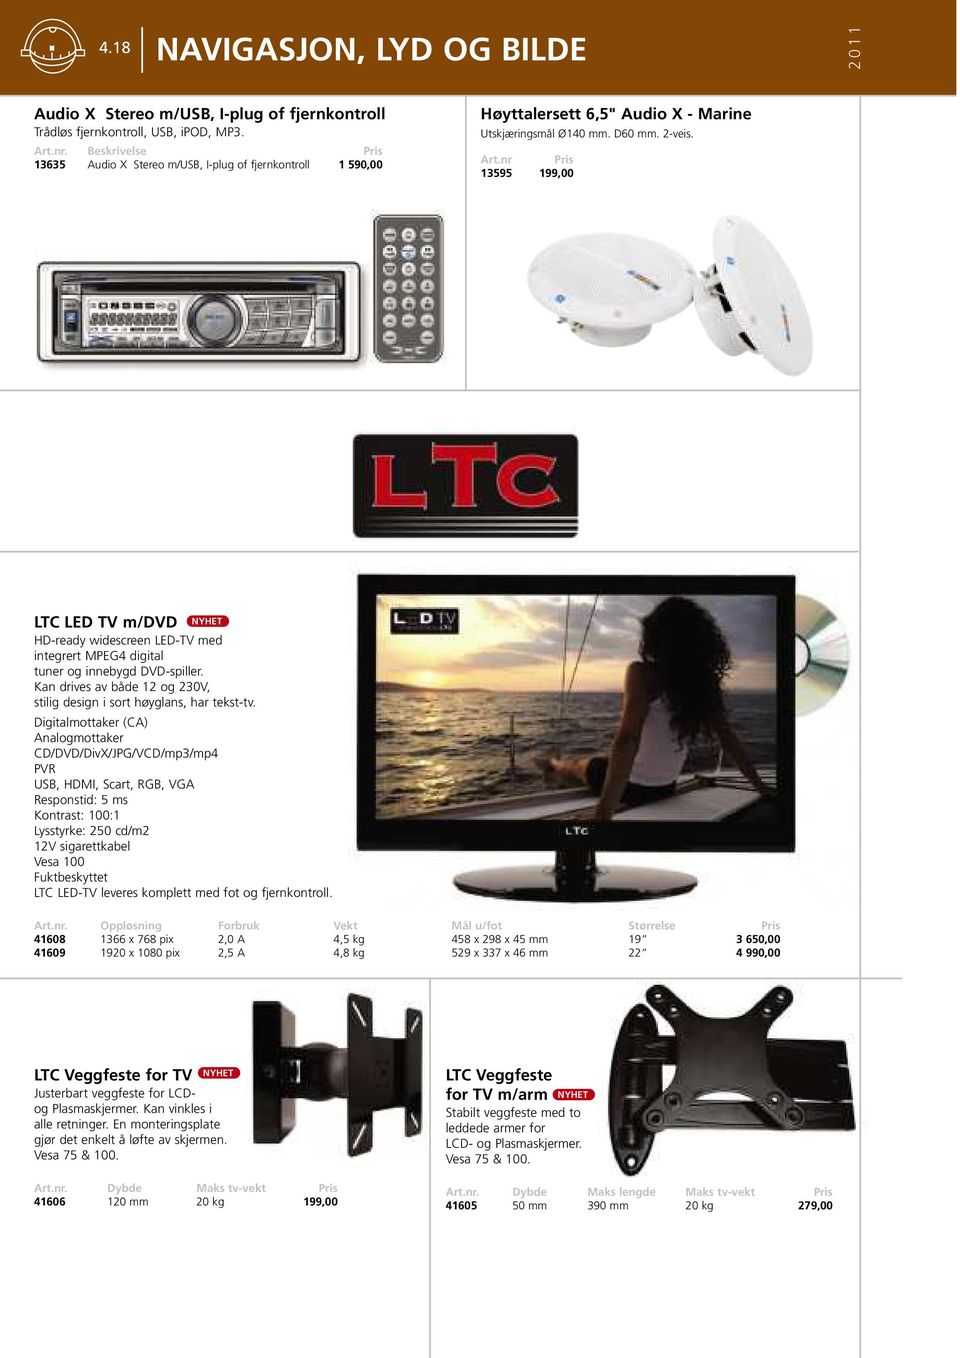 nr 13595 199,00 LTC LED TV m/dvd HD-ready widescreen LED-TV med integrert MPEG4 digital tuner og innebygd DVD-spiller. Kan drives av både 12 og 230V, stilig design i sort høyglans, har tekst-tv.